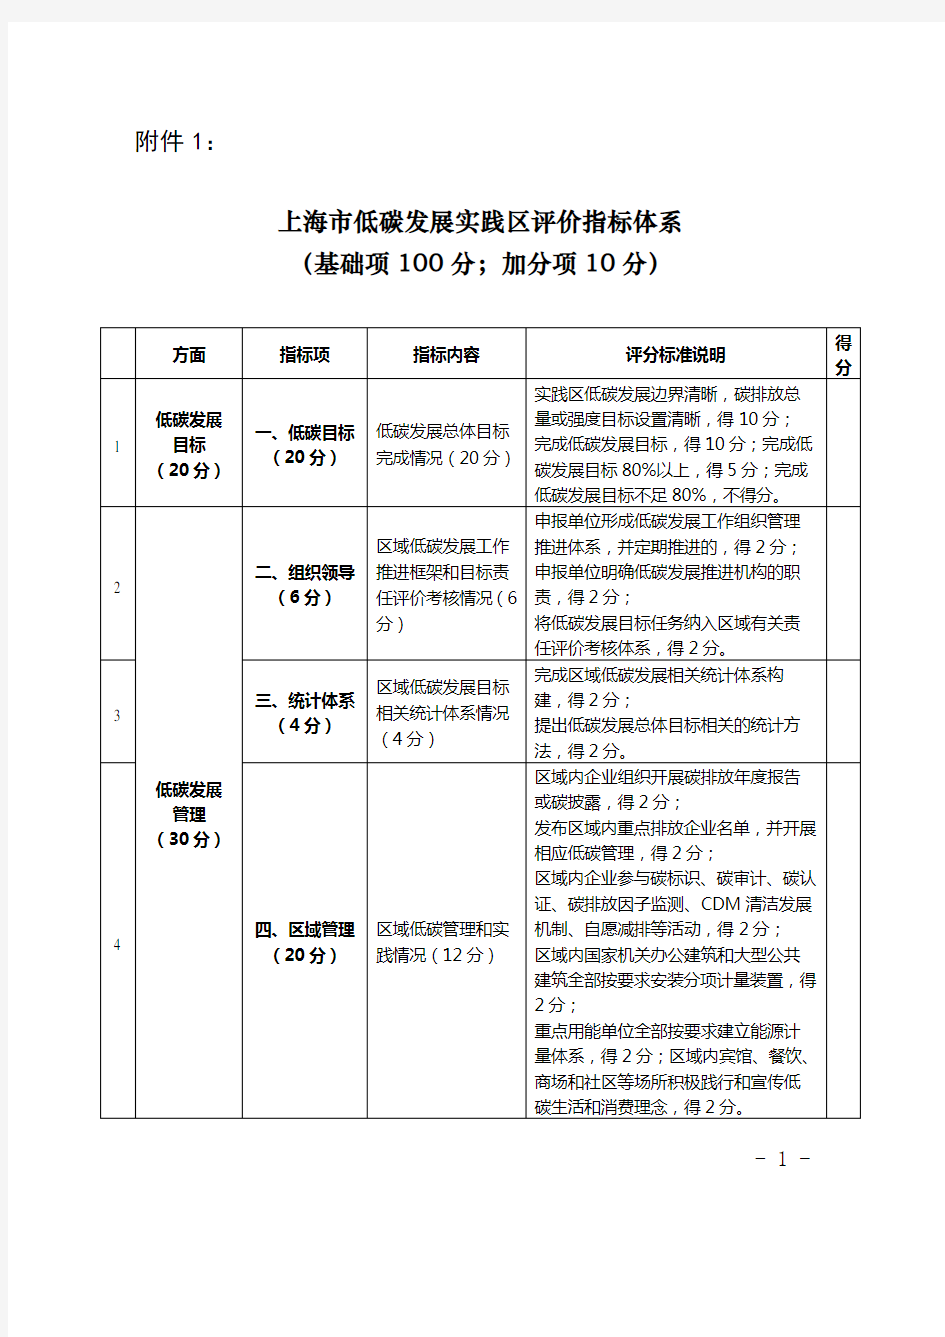 上海低碳发展实践区评价指标体系